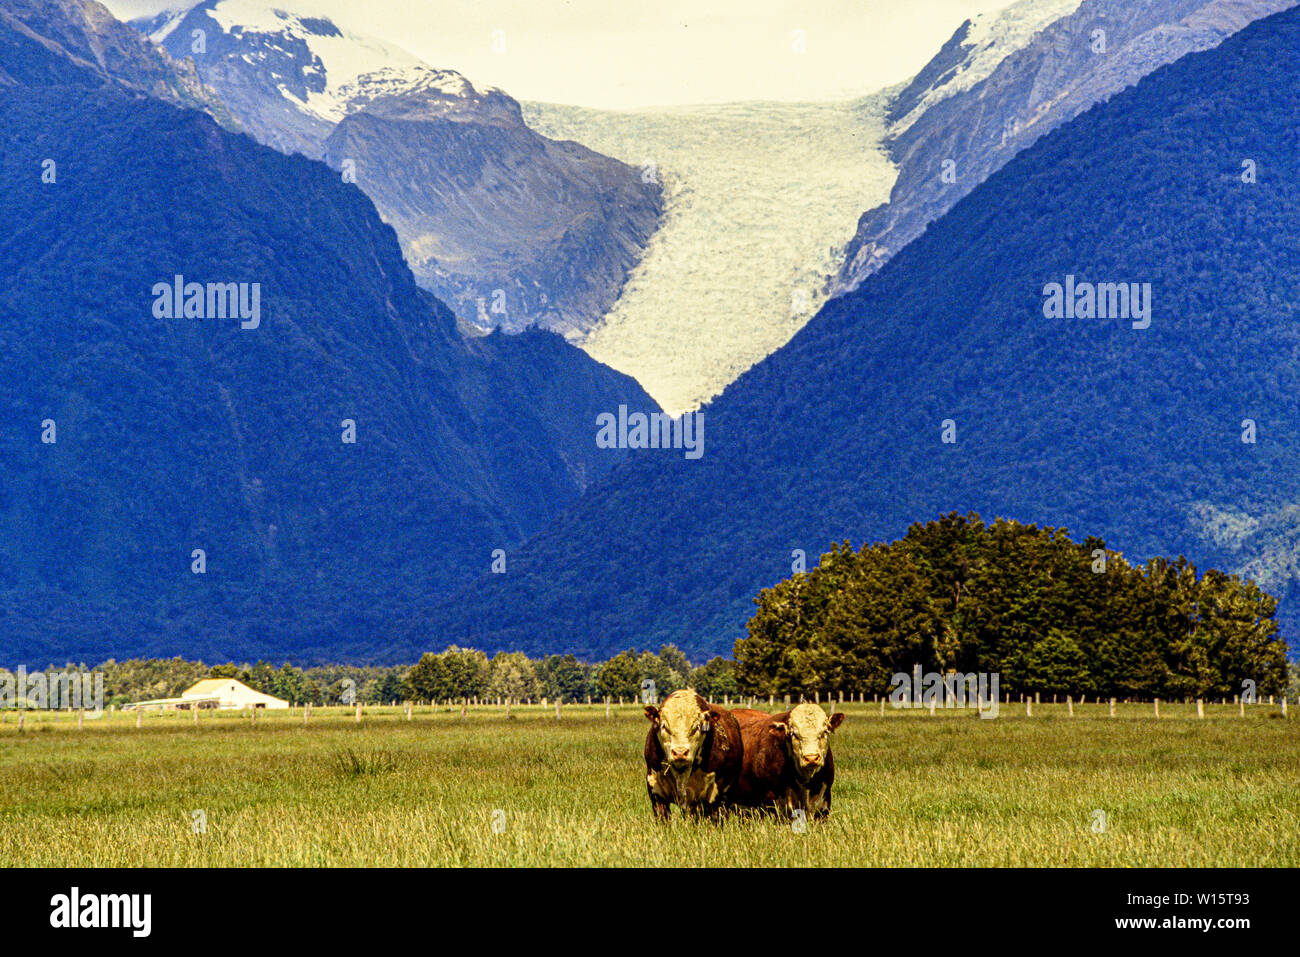 Nuova Zelanda, Isola del Sud, Westland Tai Poutini National Park. Due tori o bestiame bovino pascolano in un prato con la Franz Joseph glacier in montagna Foto Stock